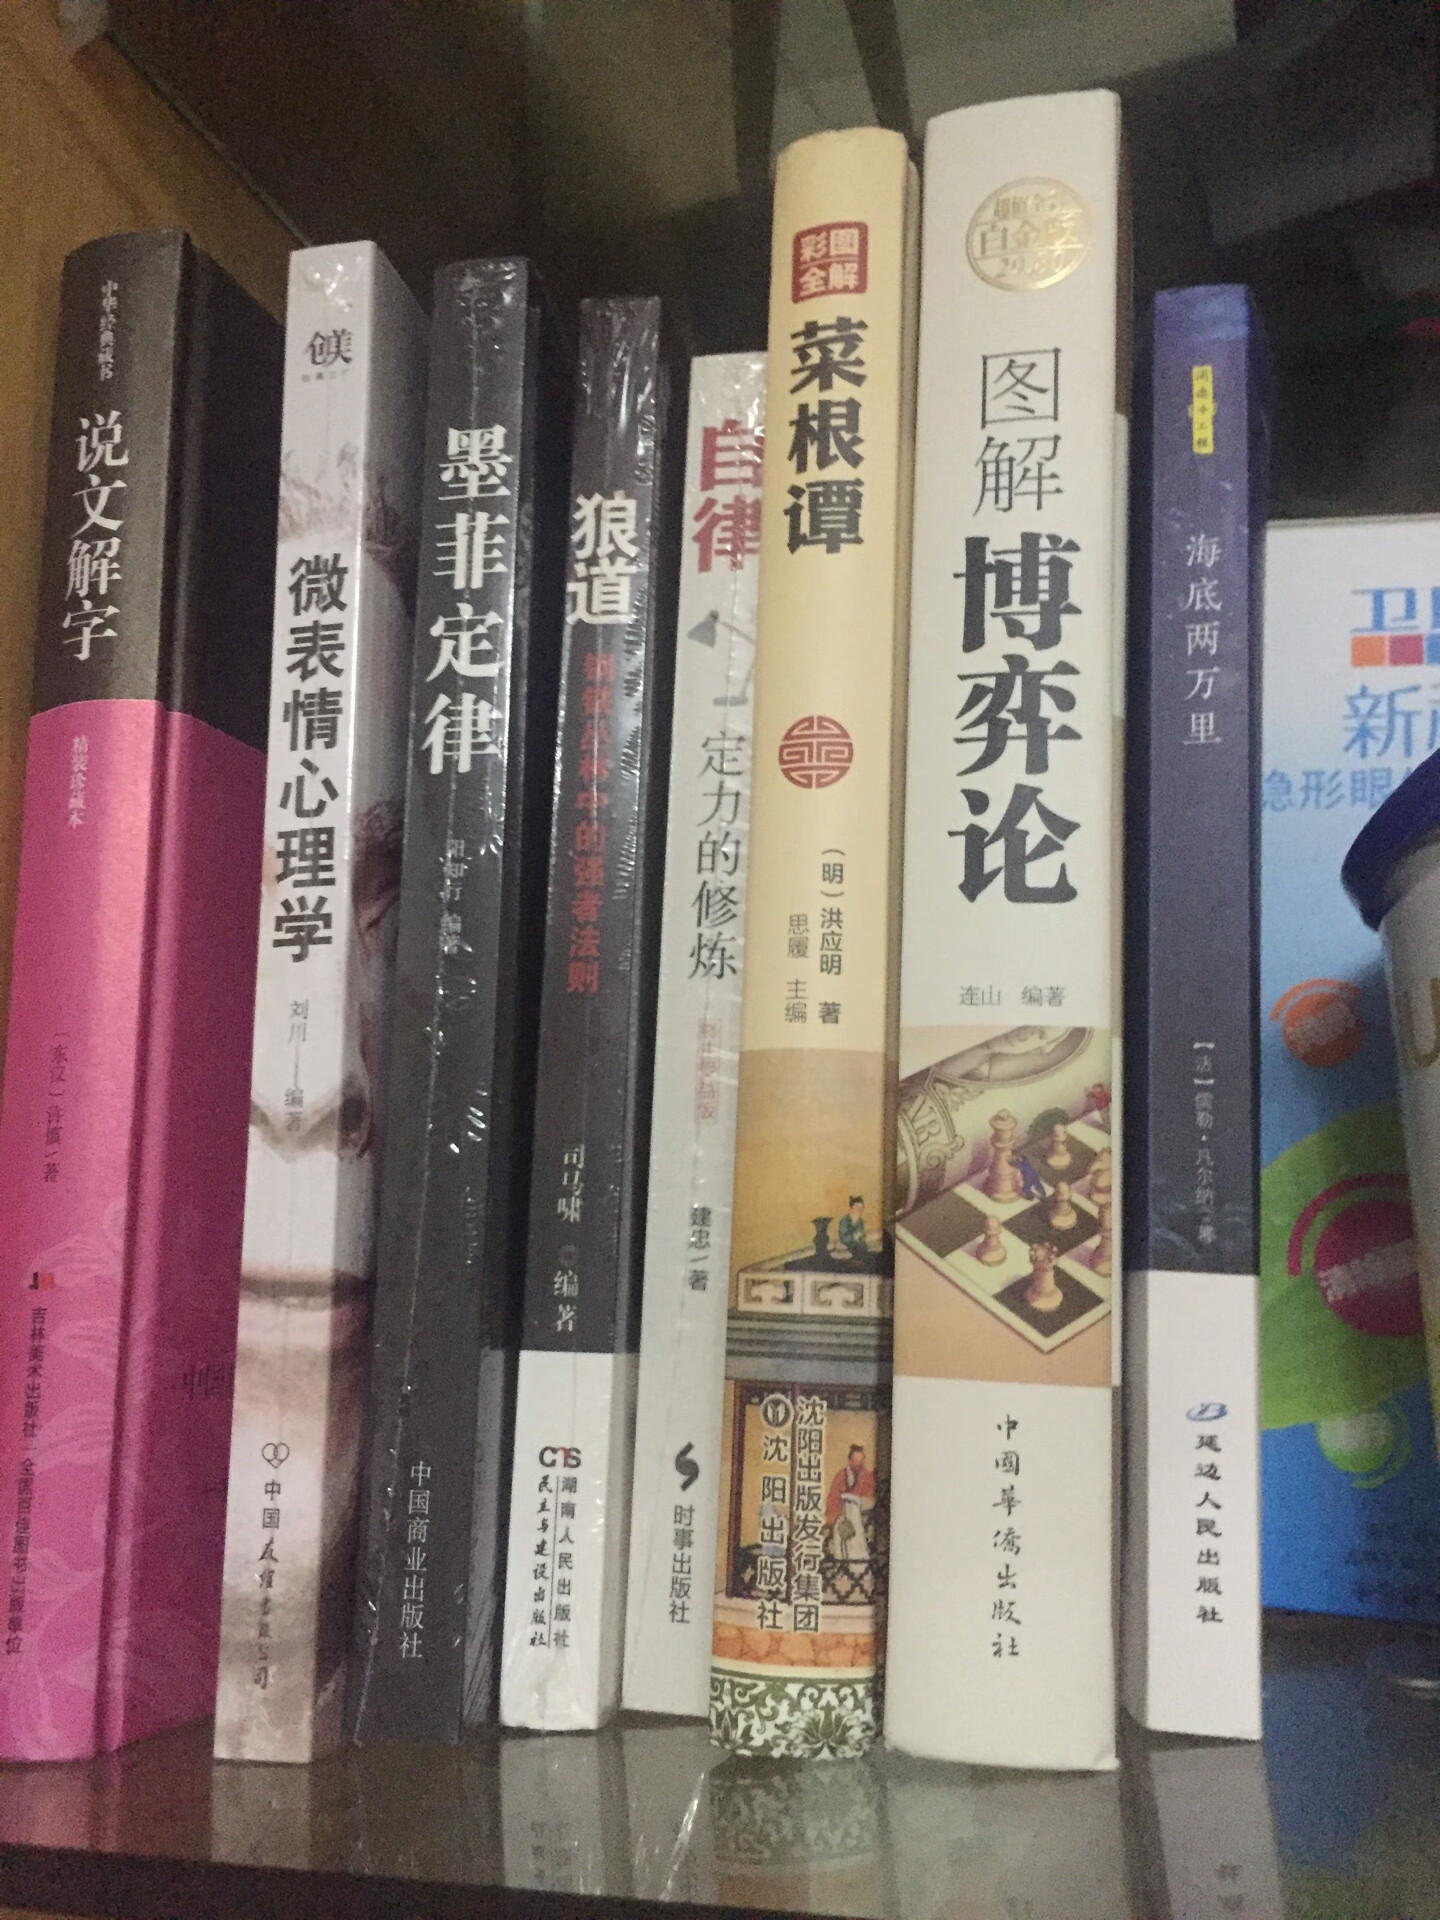 我就一~者，老公突发奇想列了个清单让我买这些书，其实还有更多！这次有活动就买买买啦！作为一个曾经的汉语言文学专业，他要好好回忆回忆当年的知识！